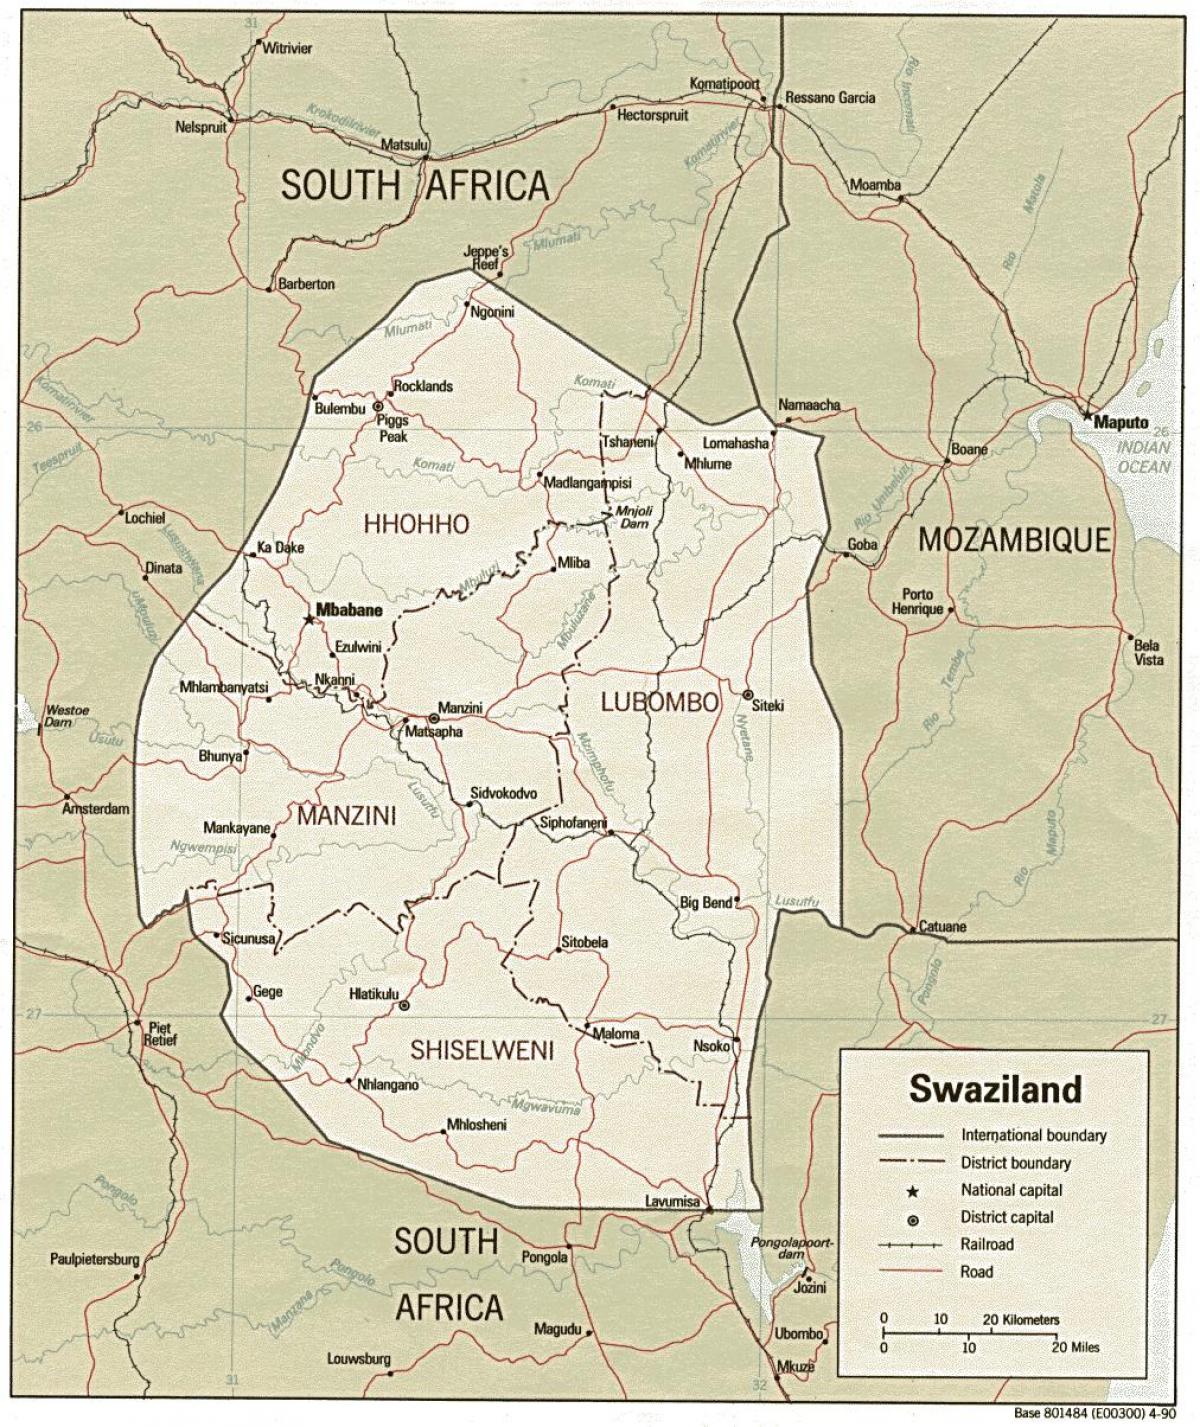 Swaziland haritası sınır mesajları gösteren 